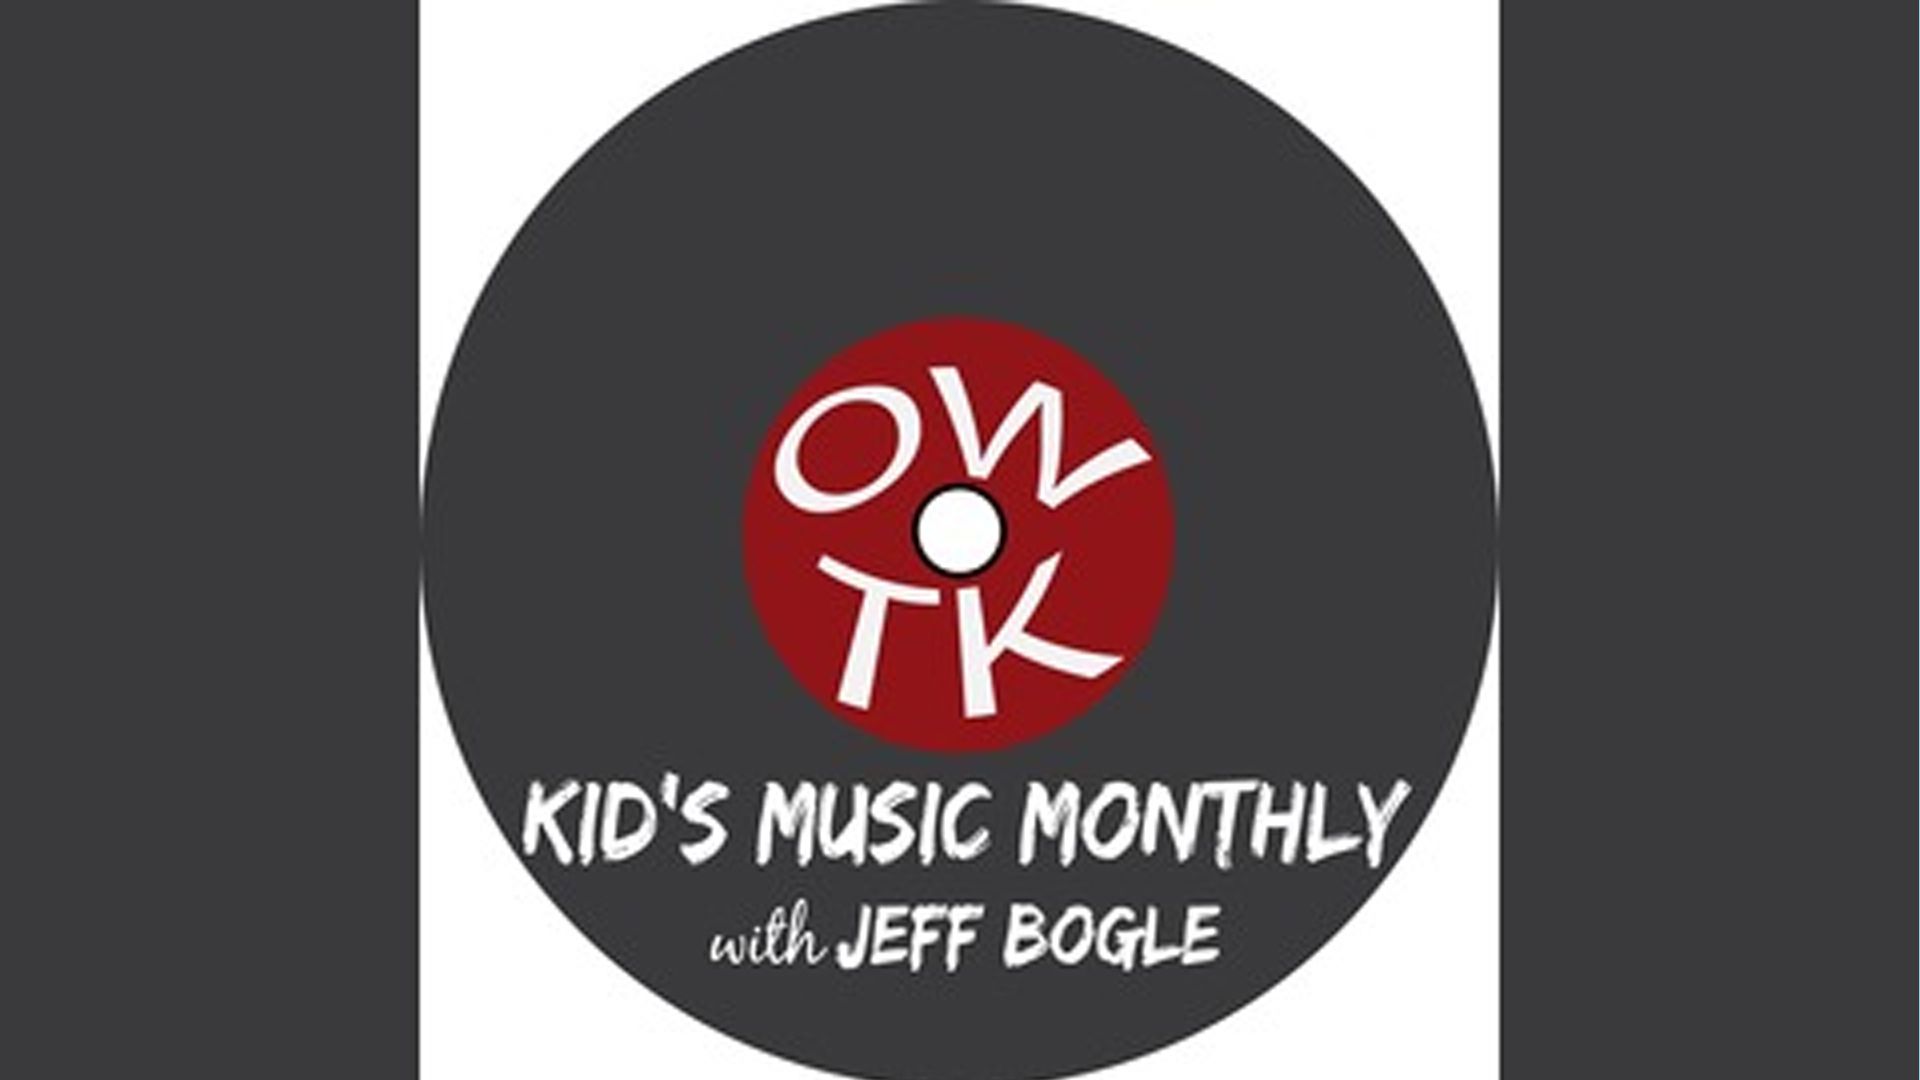 Měsíční podcast OWTK pro dětskou hudbu